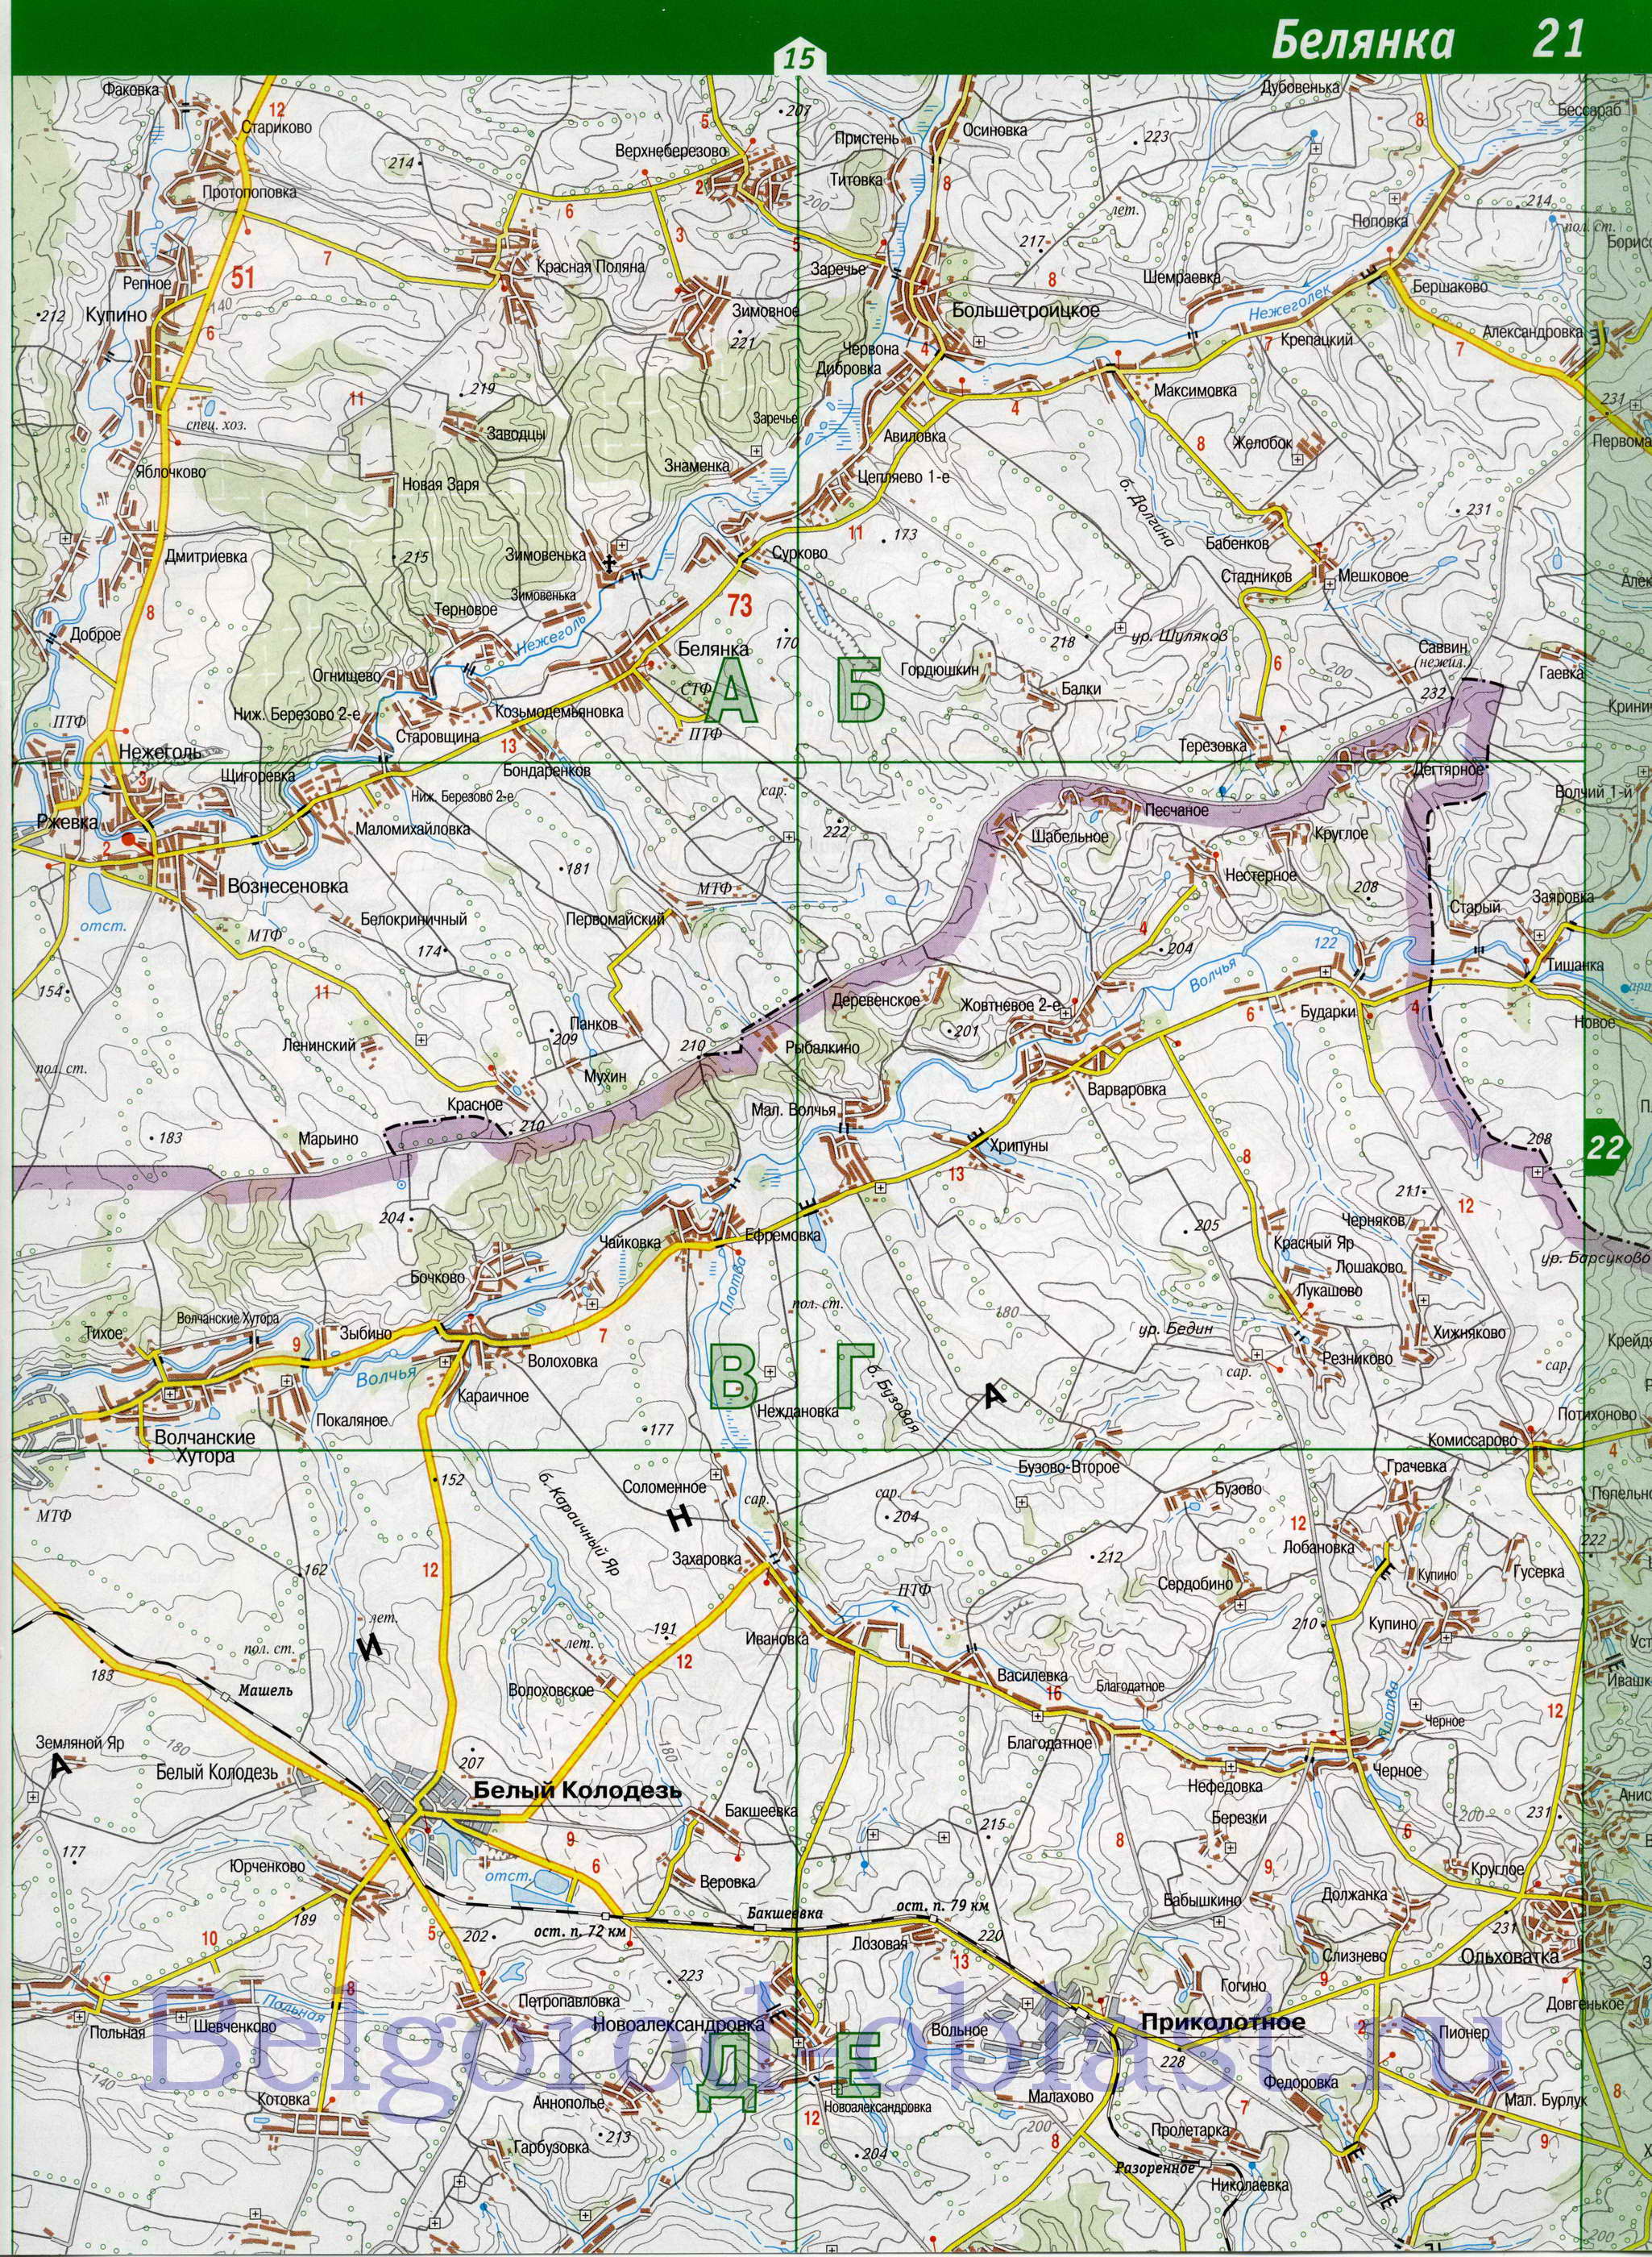 Карта Шебекинского района. Топографическая карта Белгородской области - Шебекинский район, B0 - 